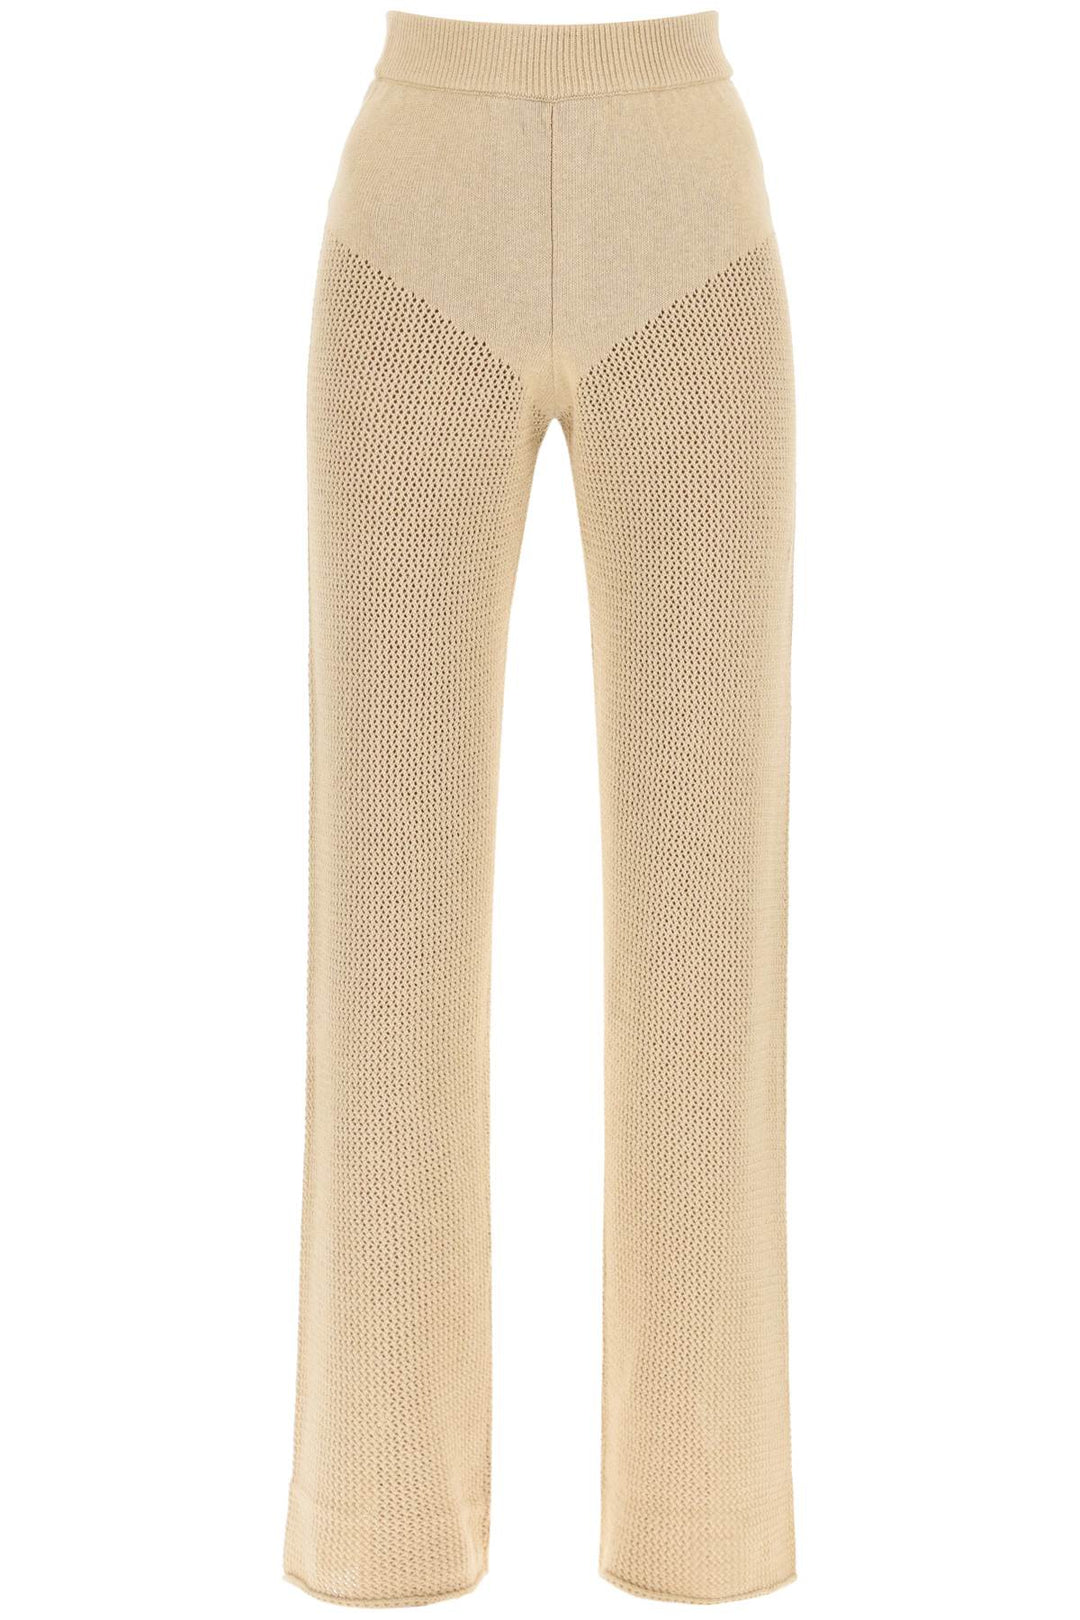 Pantaloni 'Cambria' In Maglia Traforata - Mvp Wardrobe - Donna